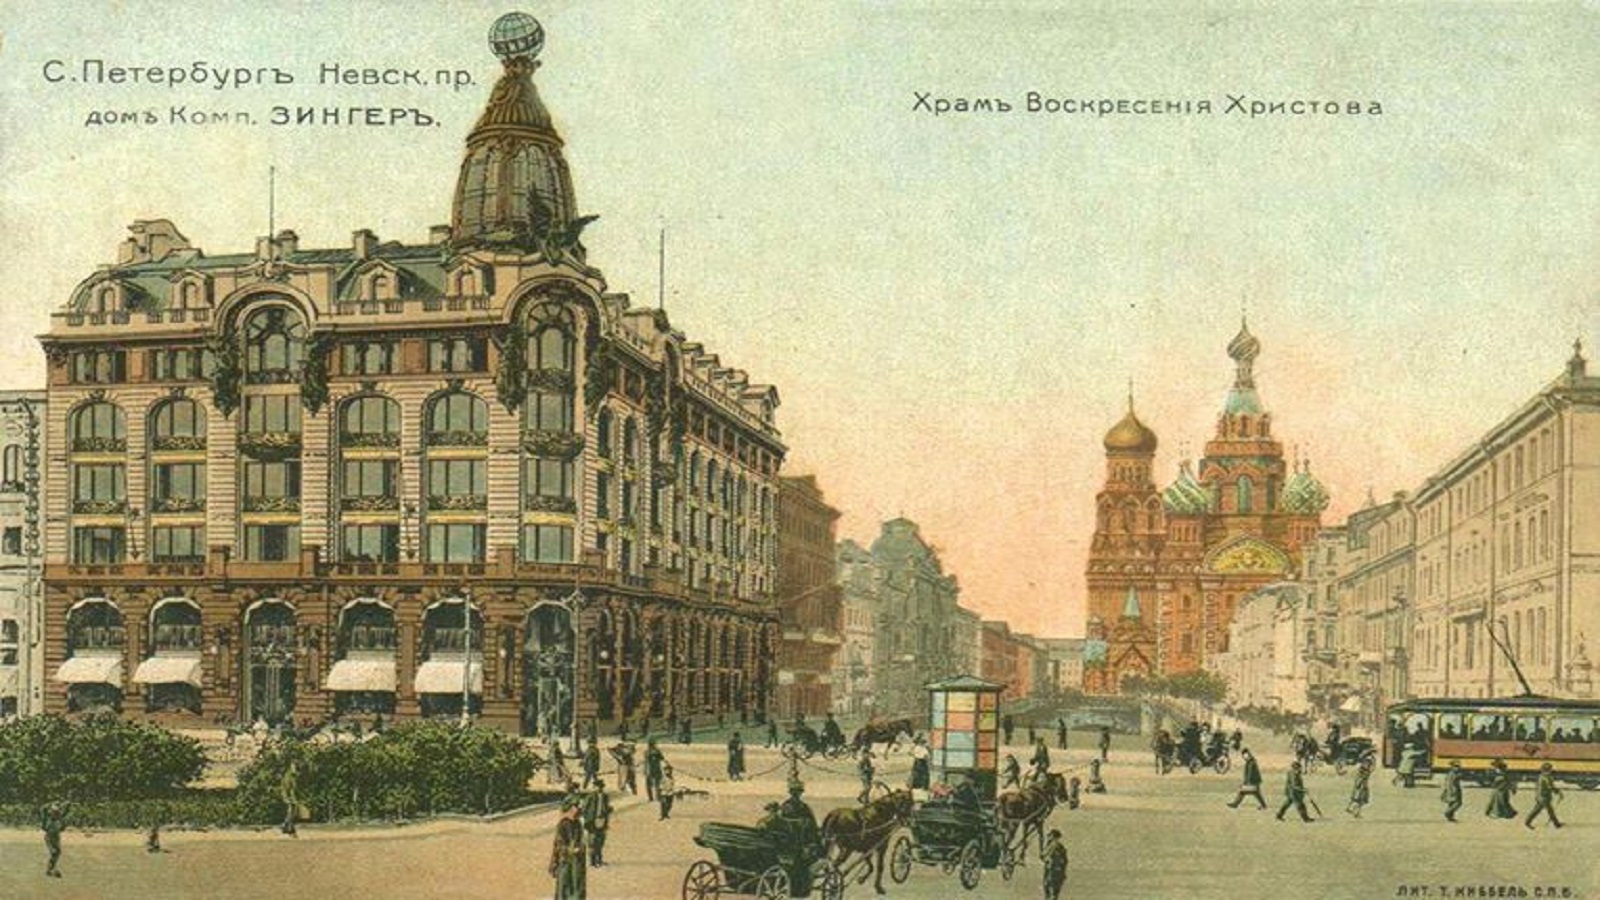 سان بطرسبورغ: روح المدينة المختزنة في كتب